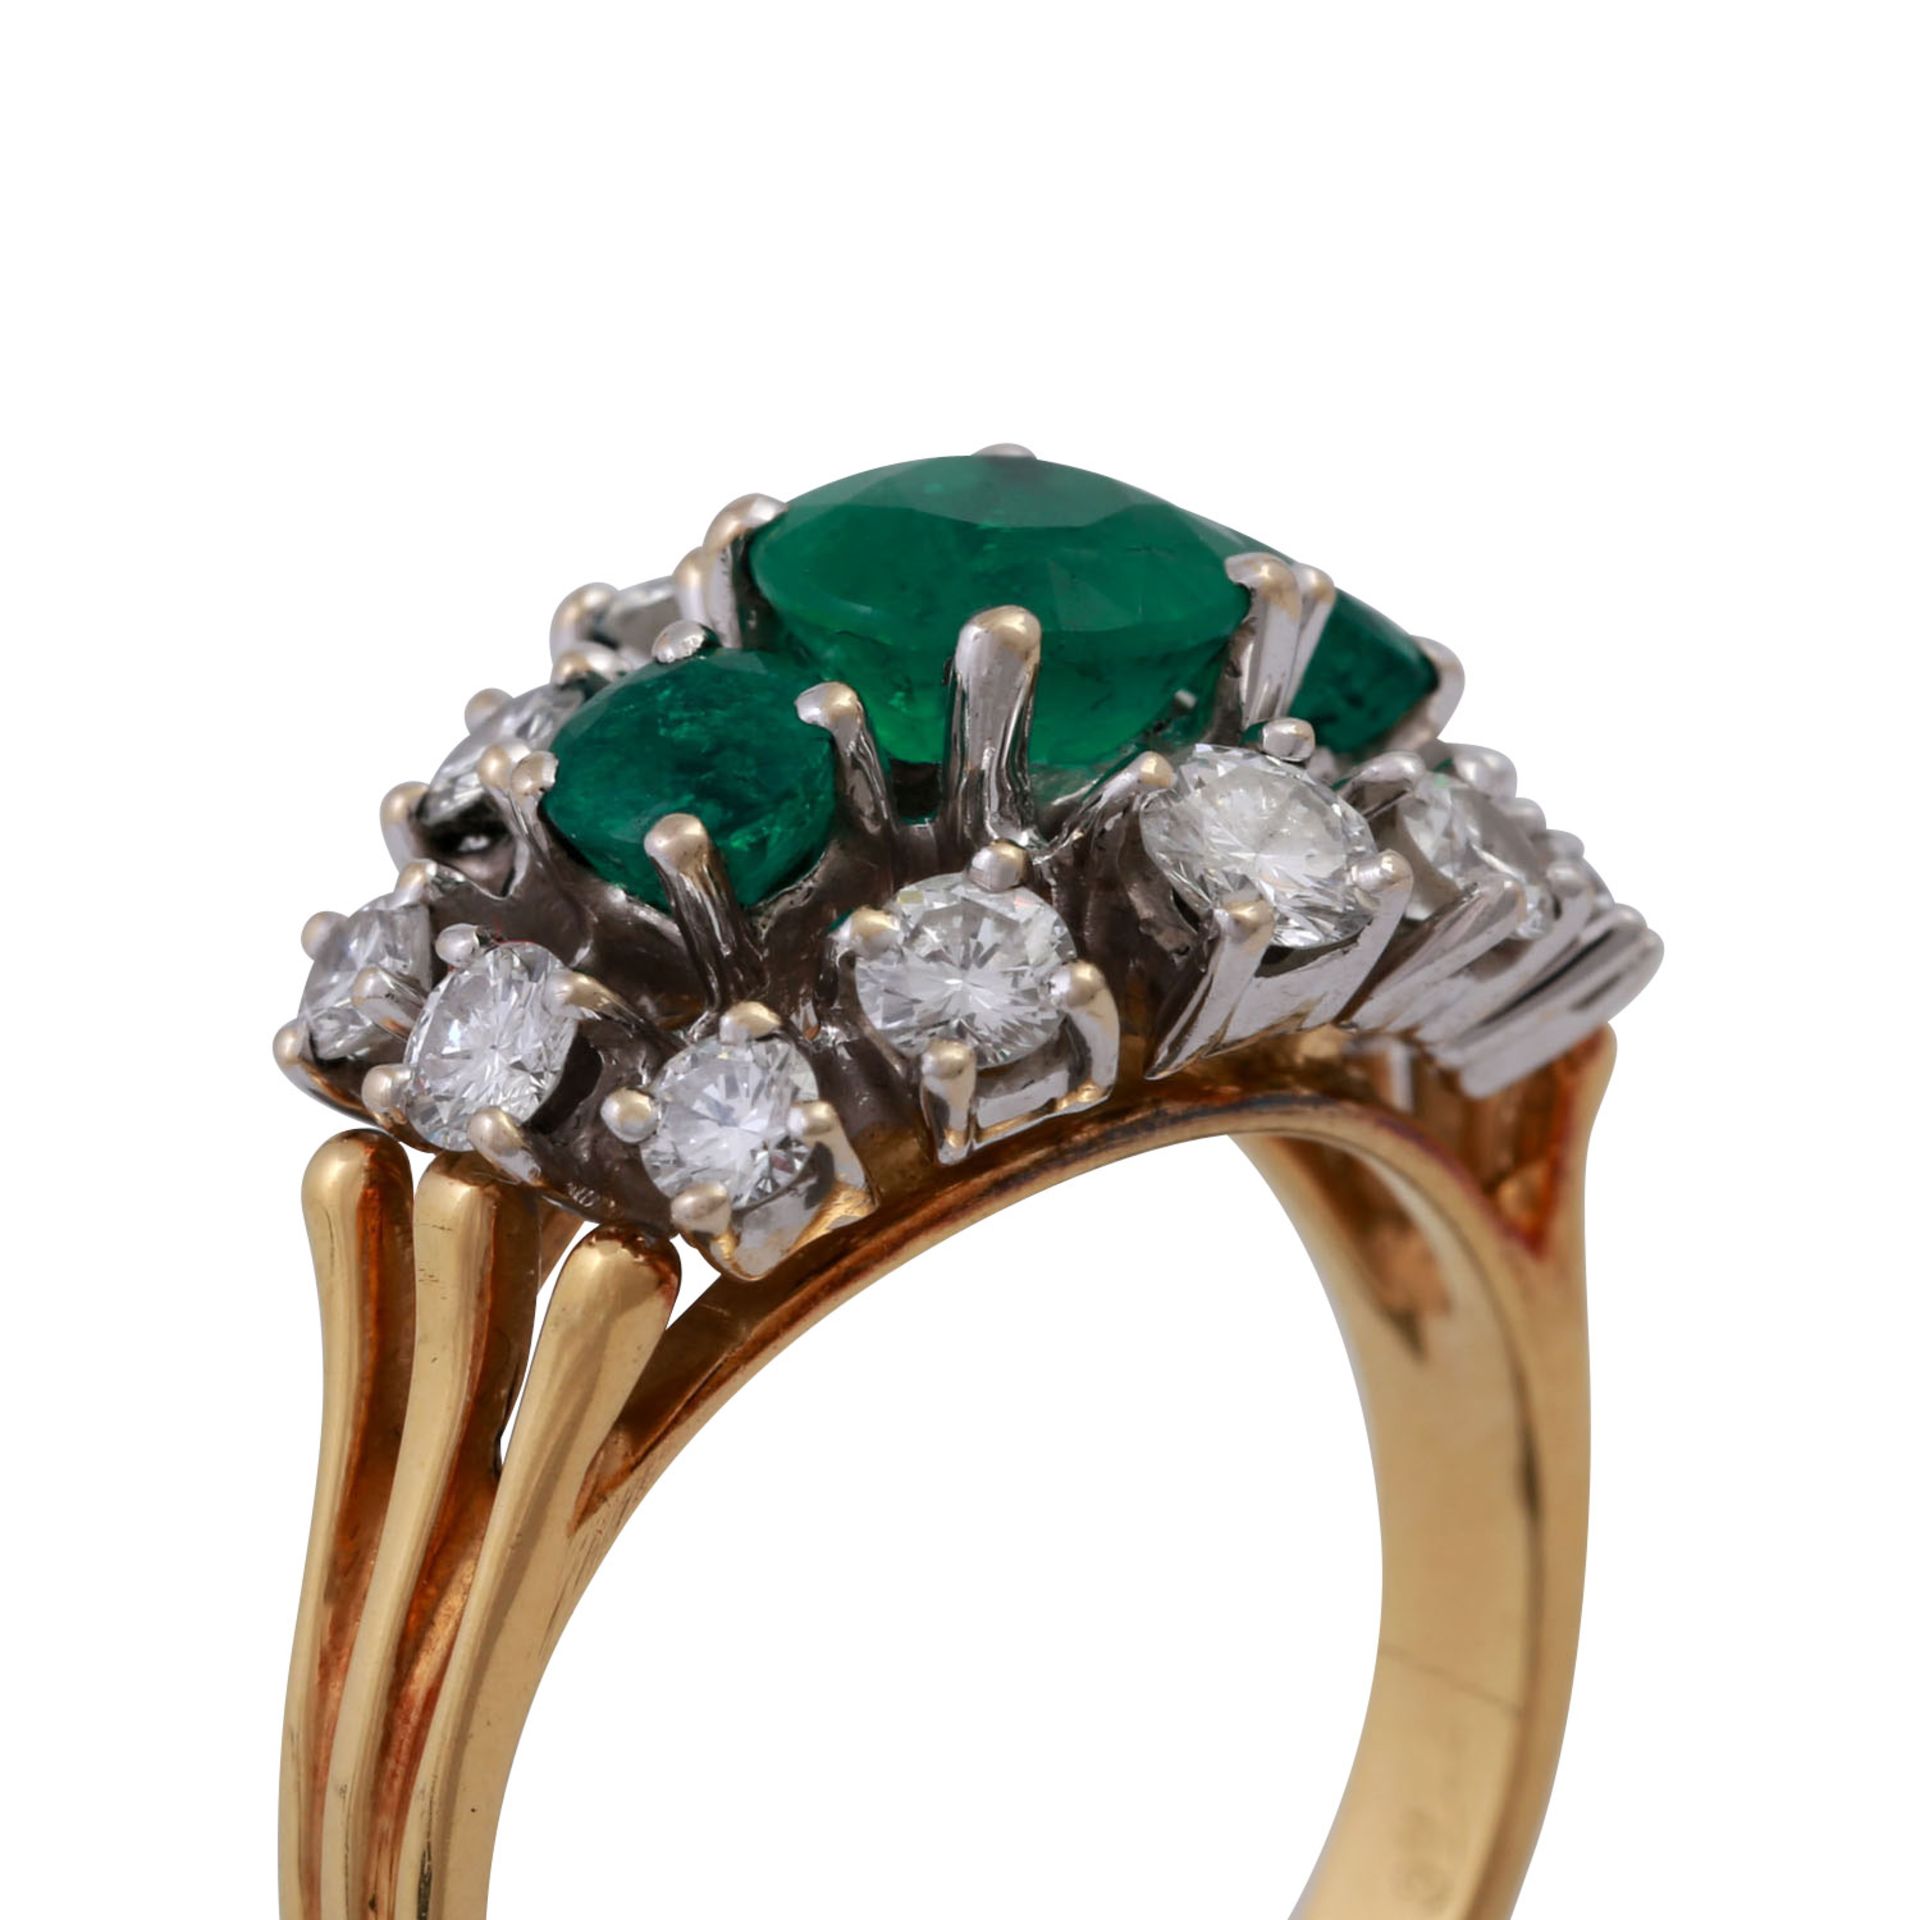 Ring mit 3 Smaragden und 12 Brillanten, zus. ca. 1 ct,guter Farb- und Reinheitsgrad, Anordnung im - Bild 5 aus 5